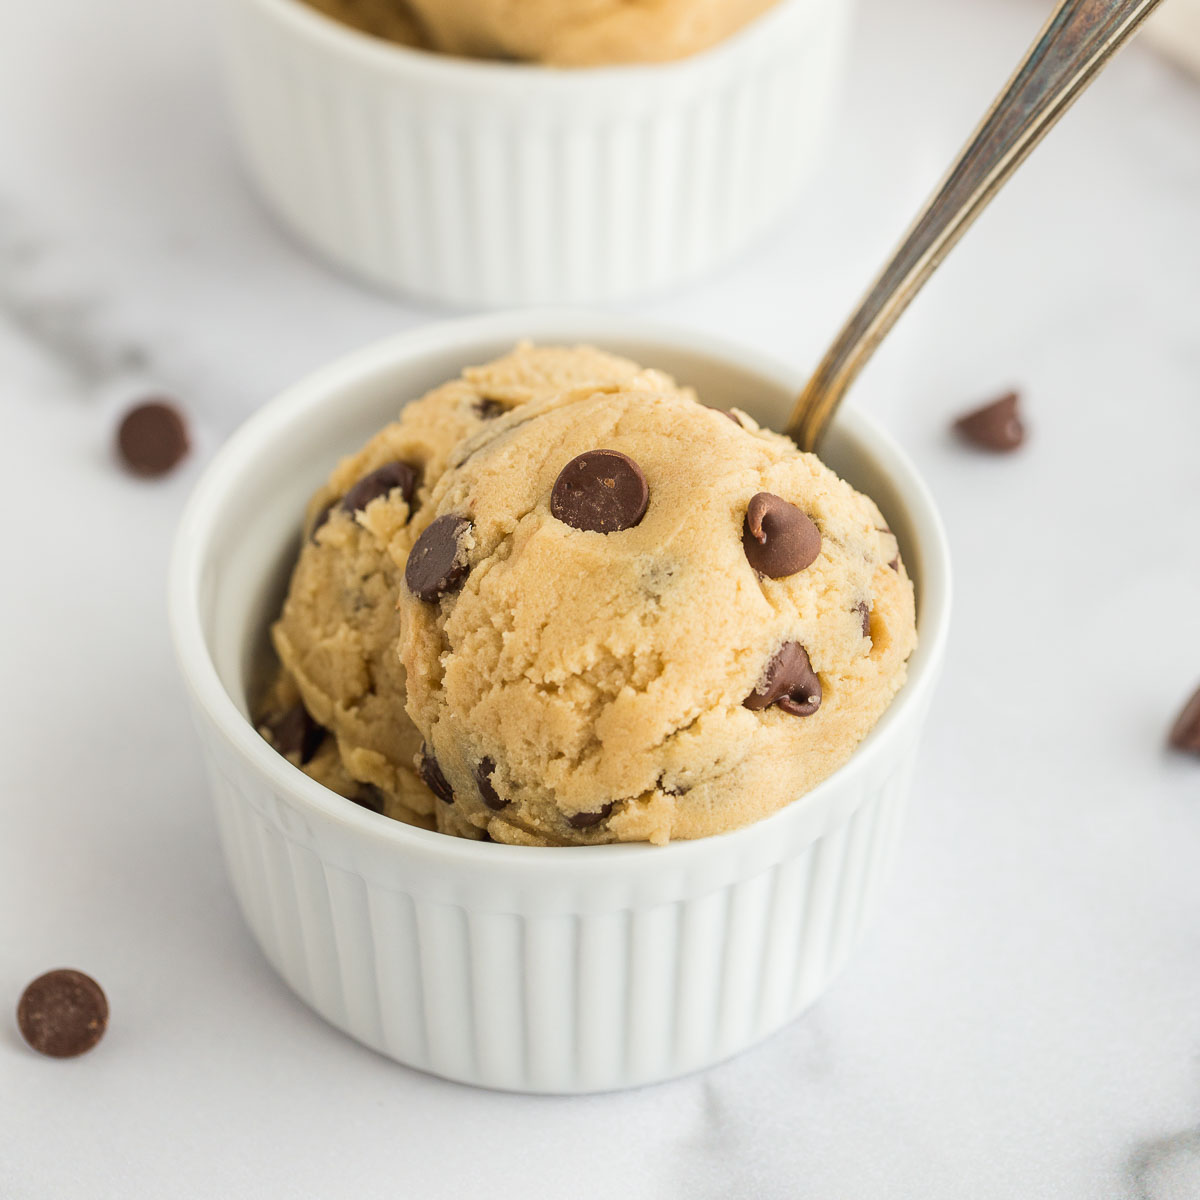 Best Deal for Mini Cookie Scoop, Cookie Dough Scoop, 2 Teaspoons/ 10 ML